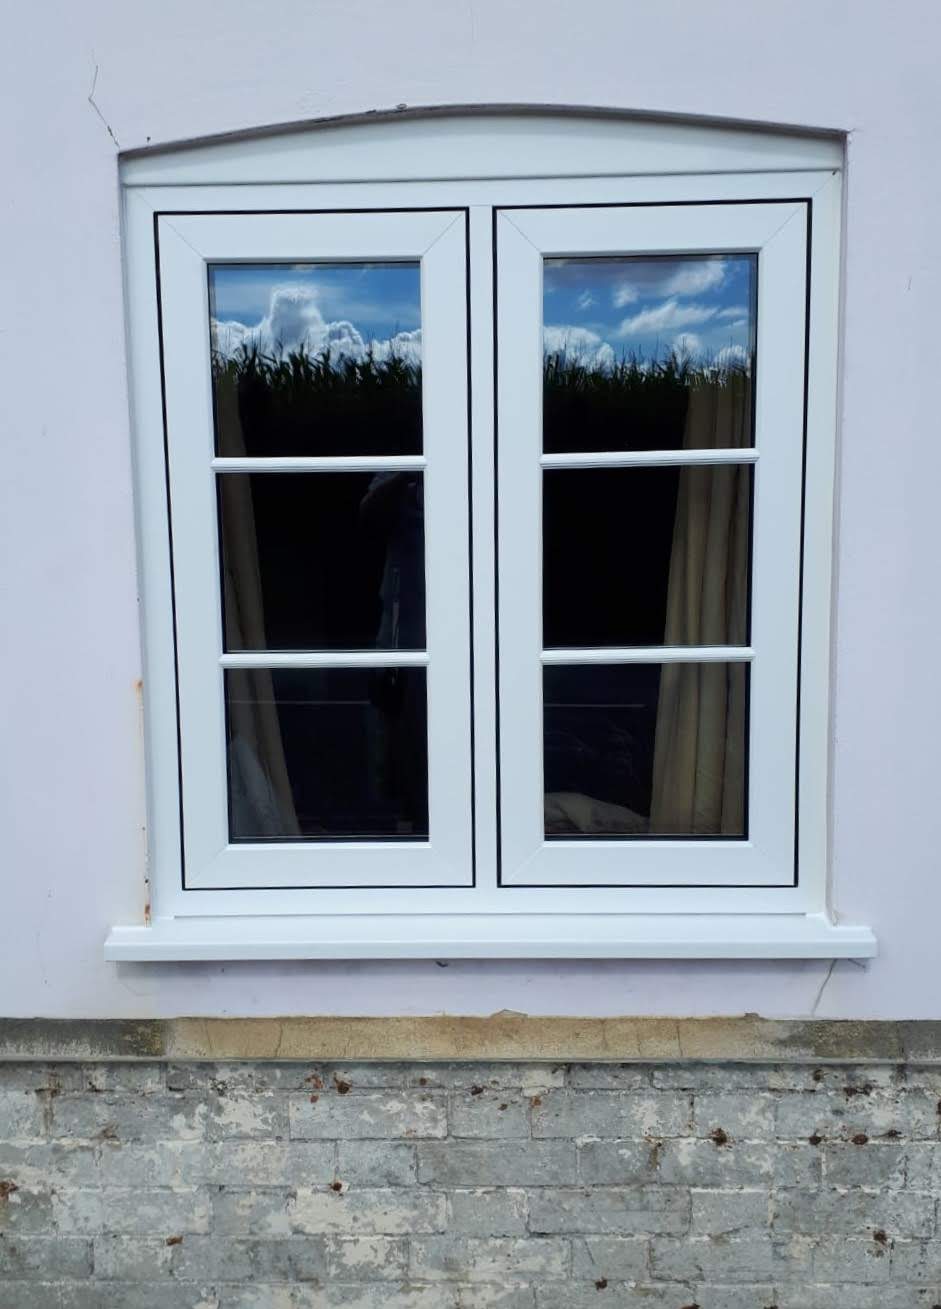 White heritage window design installation.